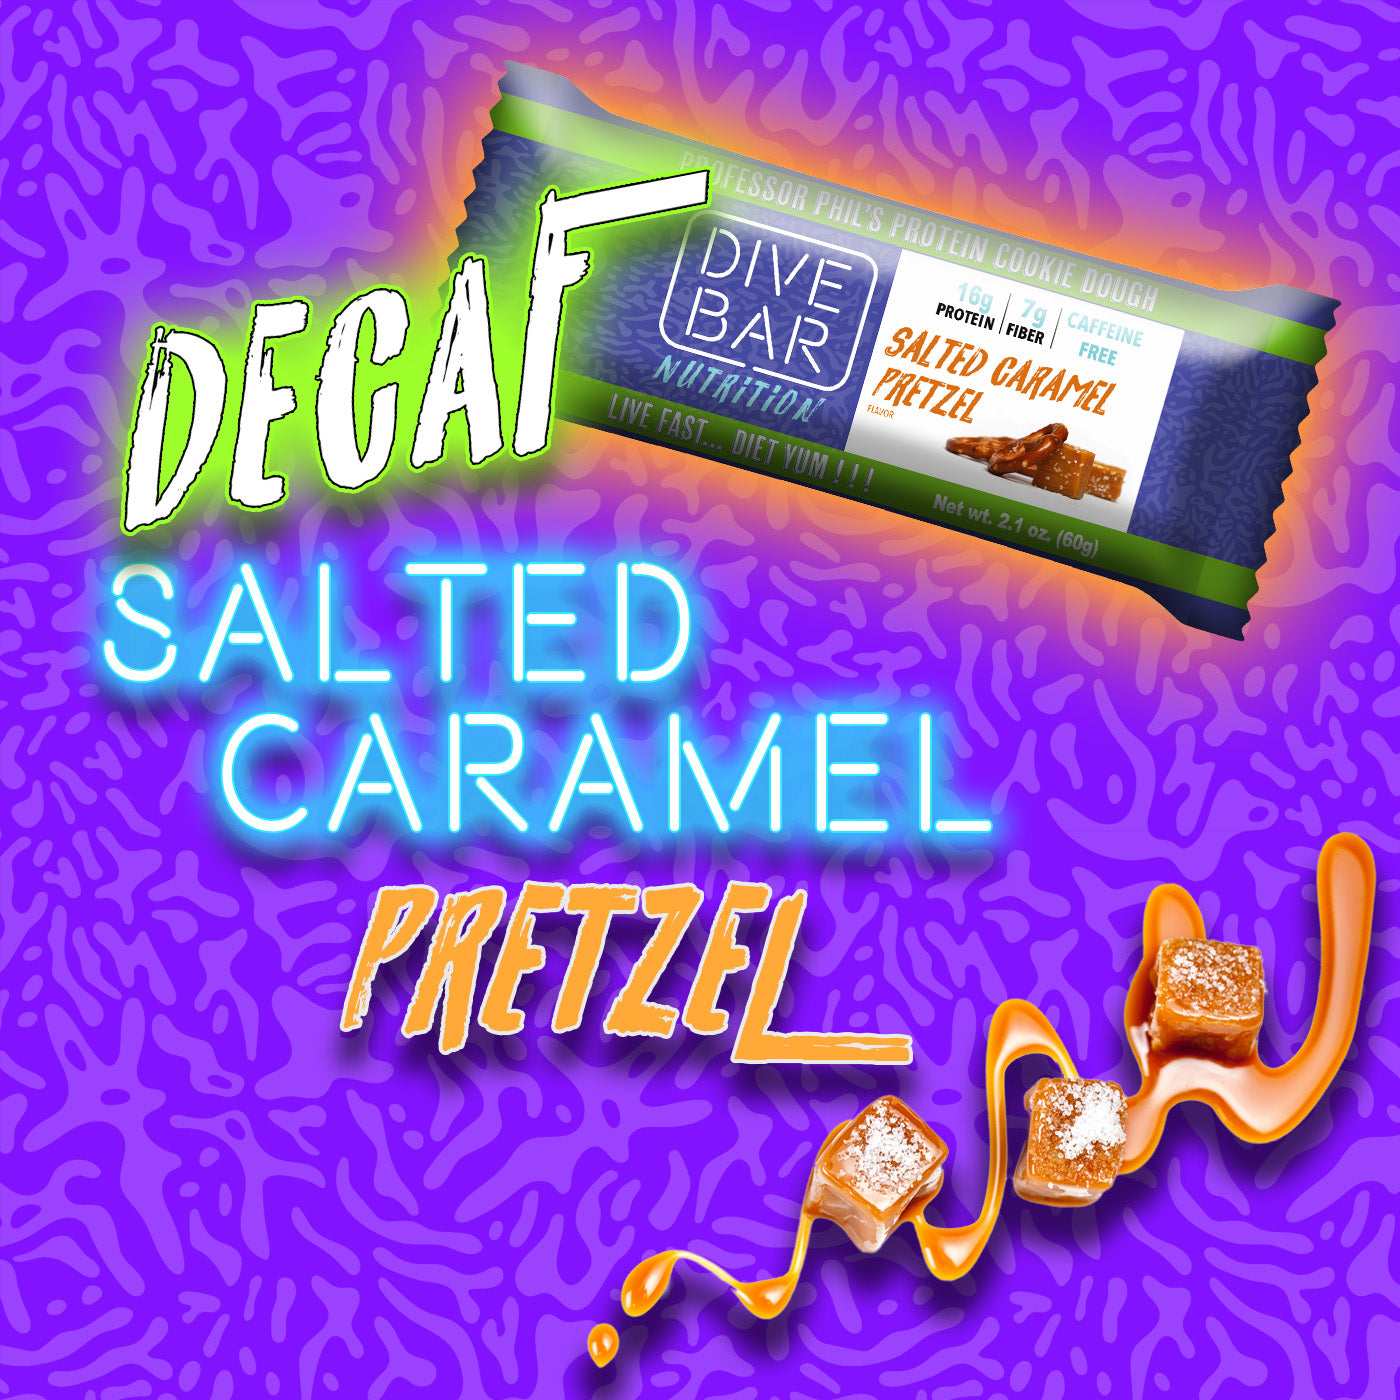 Decaf Salted Caramel Pretzel - 6 bars